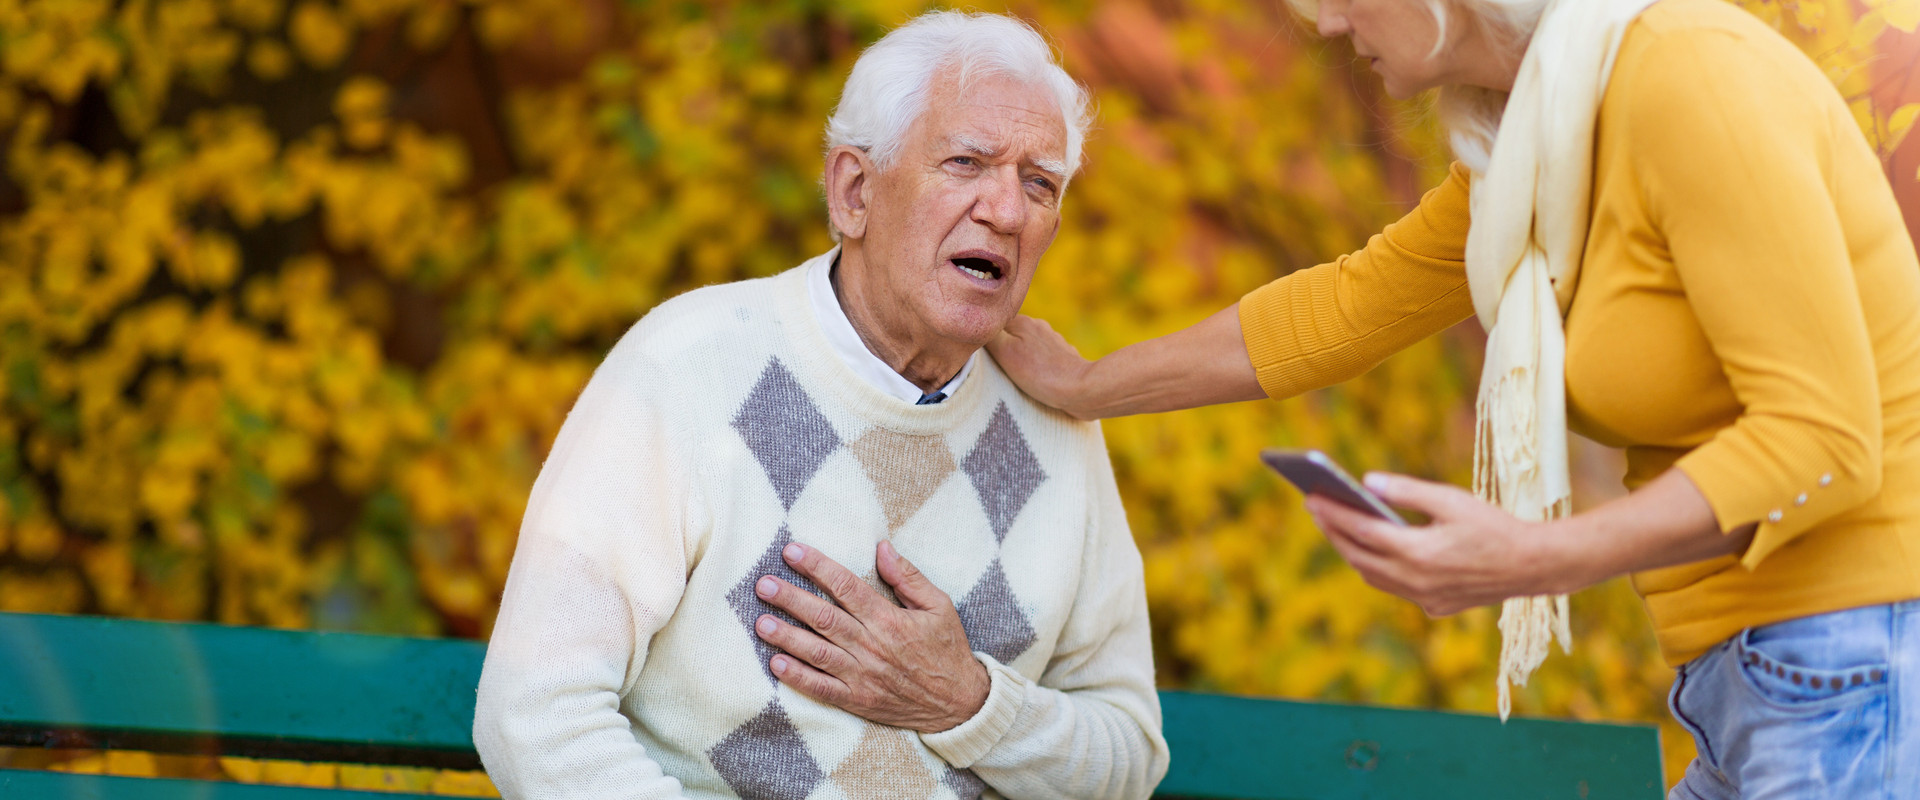 Älterer Mann sitzt im Park auf einer Bank, fasst sich ans Herz, eine Frau mit Handy in der Hand legt eine Hand auf seine Schulter